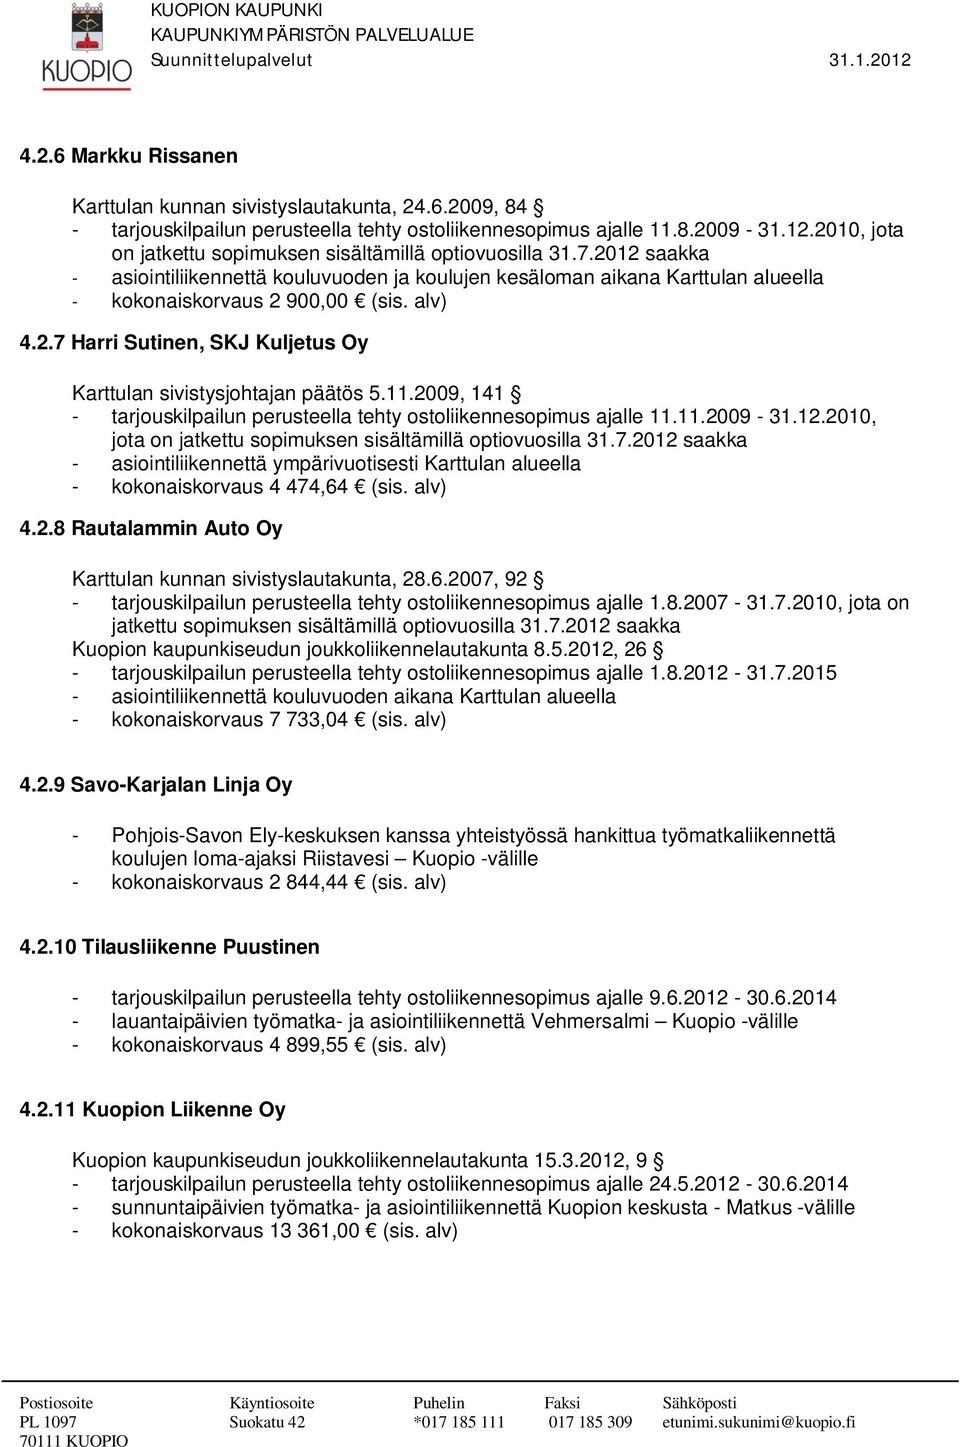 2.7 Harri Sutinen, SKJ Kuljetus Oy Karttulan sivistysjohtajan päätös 5.11.2009, 141 - tarjouskilpailun perusteella tehty ostoliikennesopimus ajalle 11.11.2009-31.12.